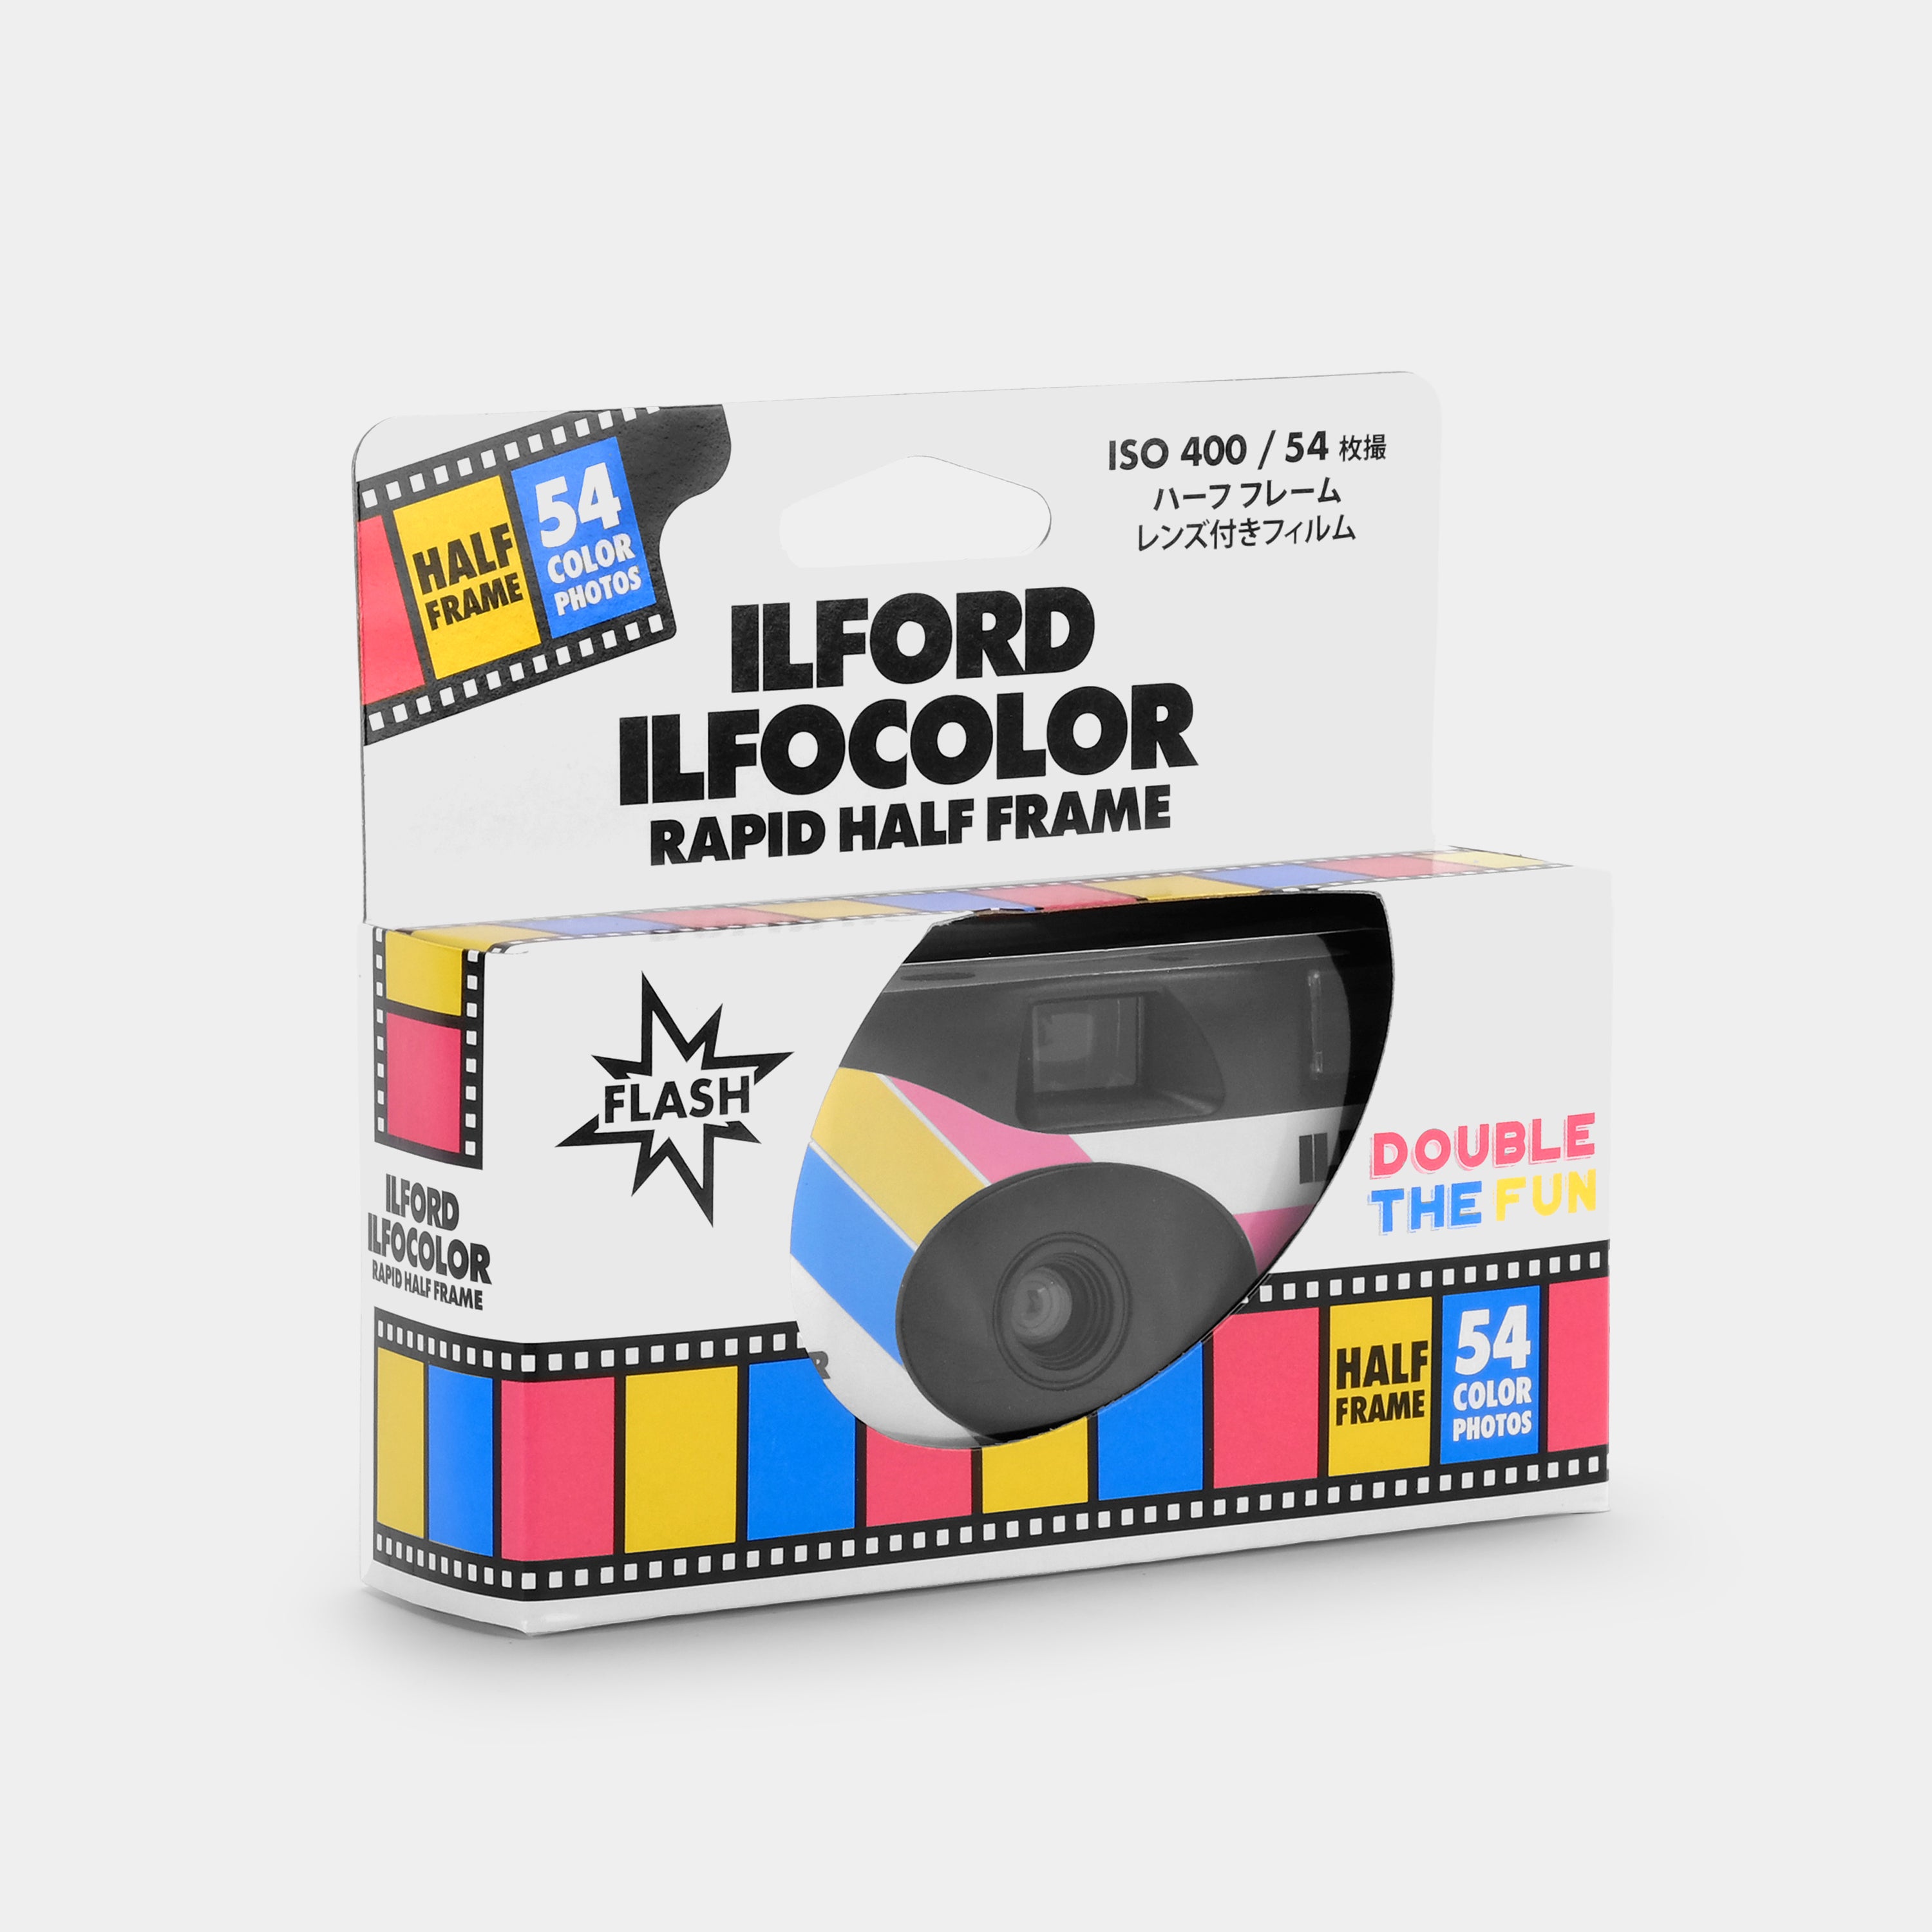 Ilford Ilfocolor Rapid Half Frame ISO 400 35mm Disposable Film Camera (54 Color Photos)